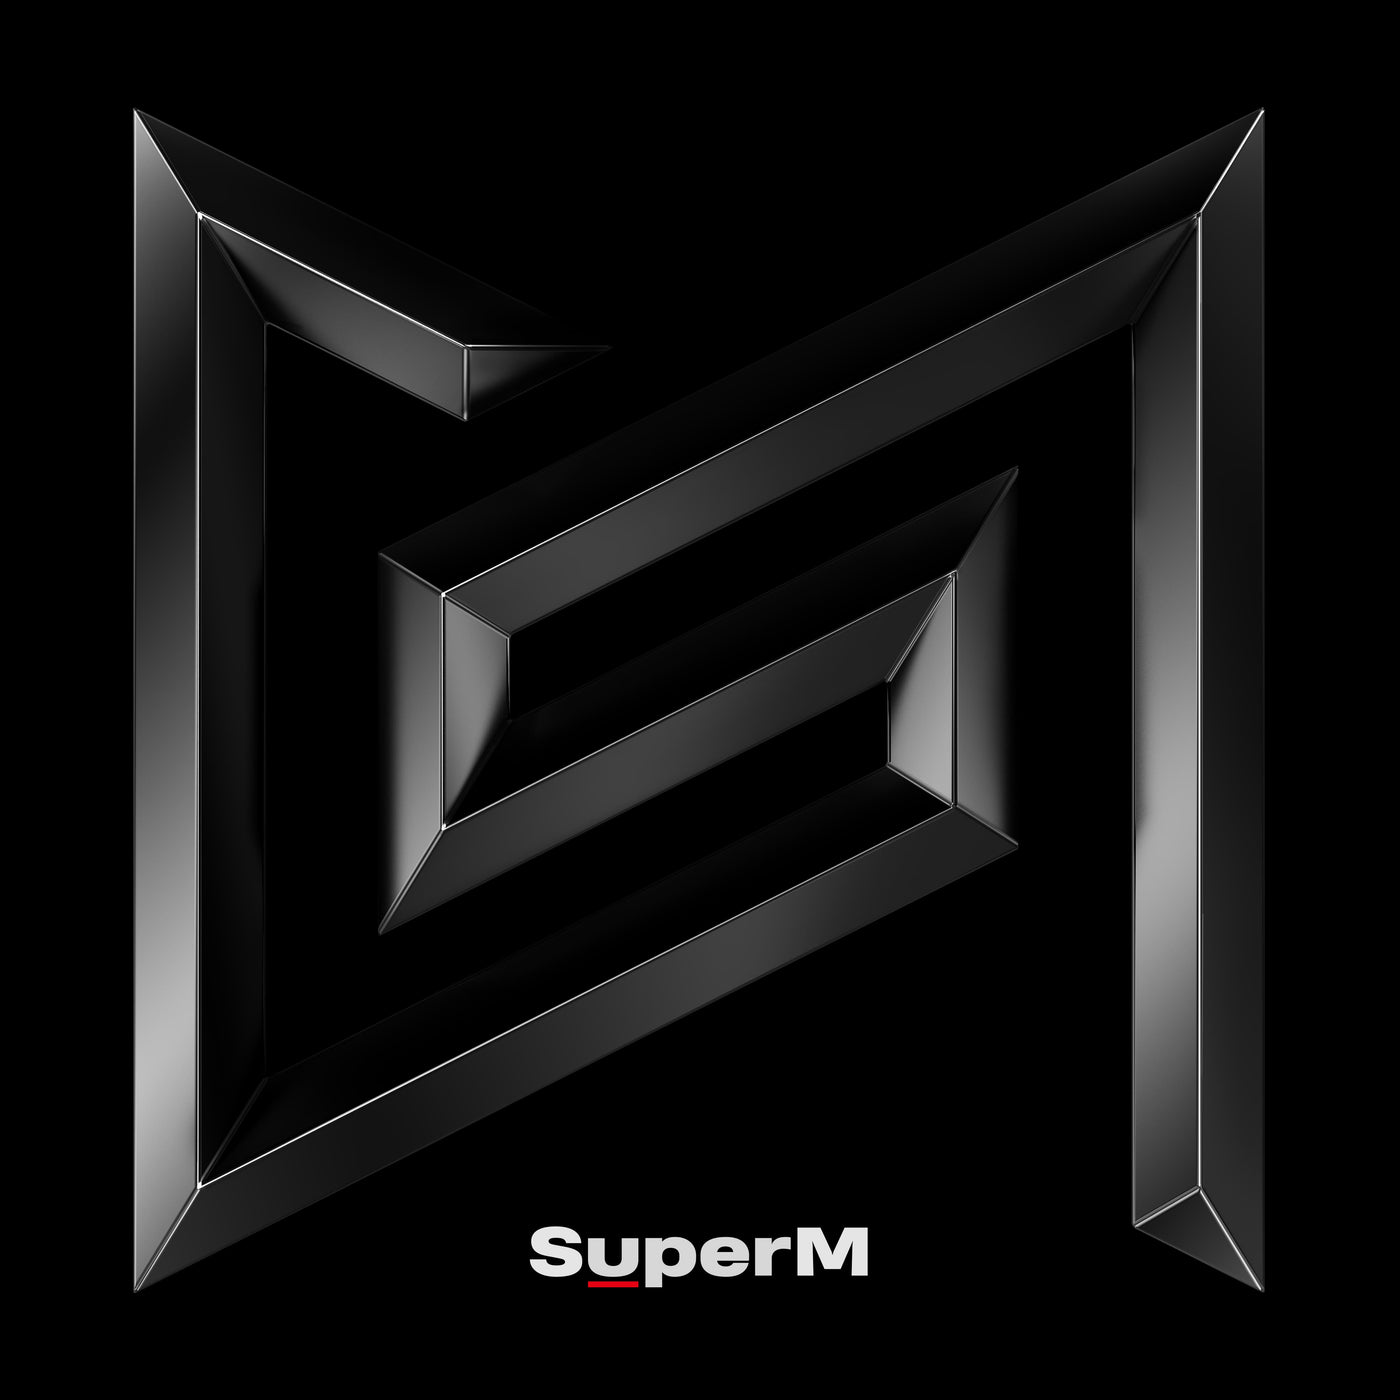 SuperM - SuperM (Ver. Random) 🇰🇷